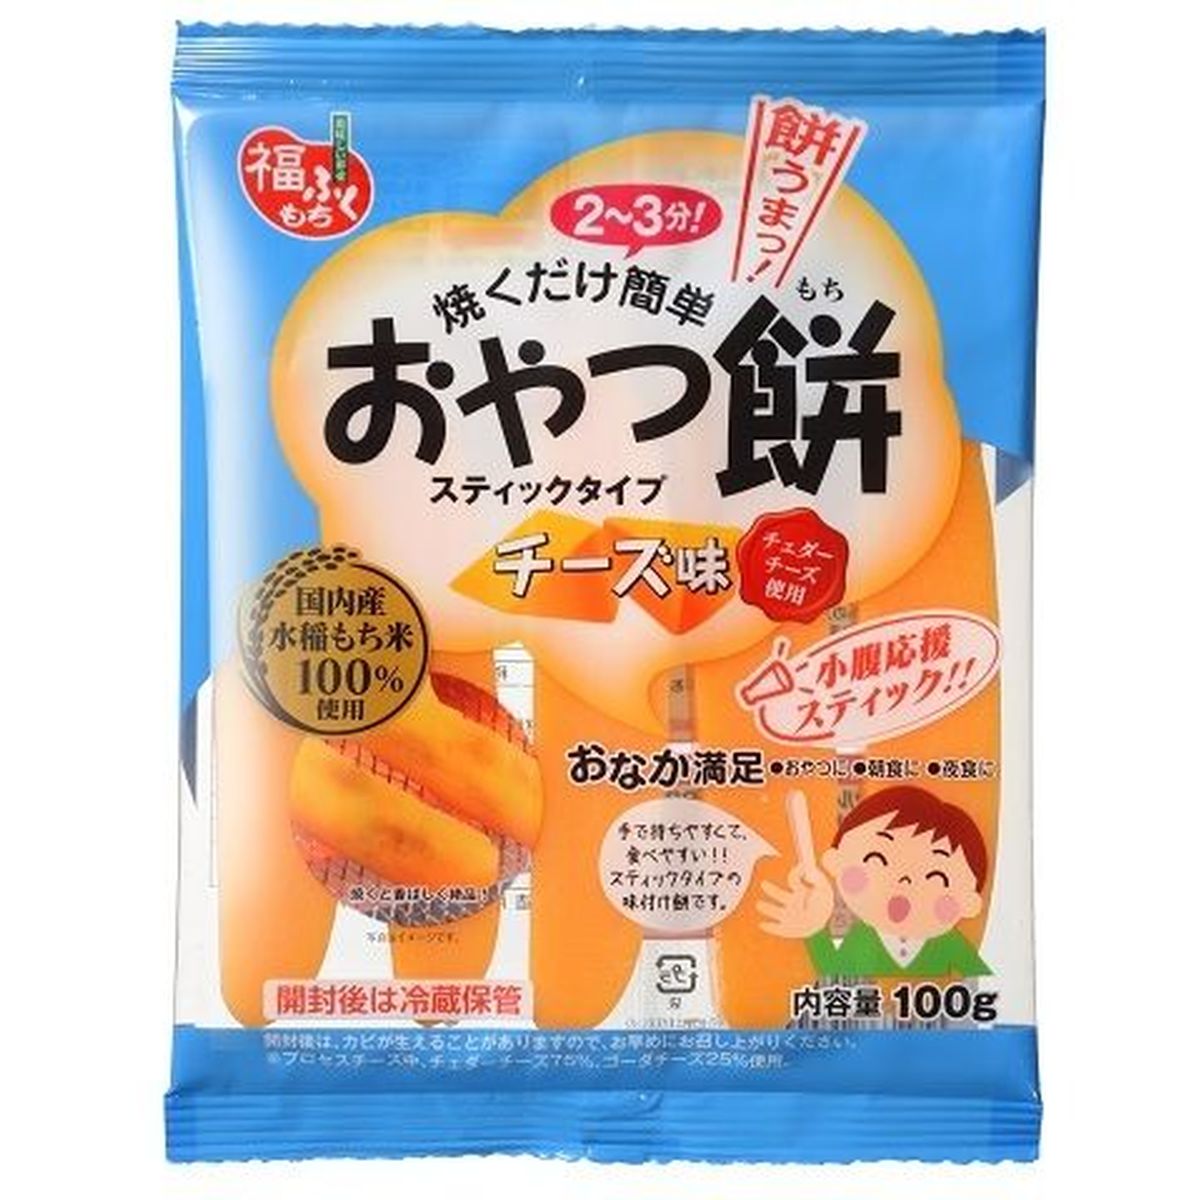 【20個入リ】マルシン食品 オヤツ餅 チーズ味 100g